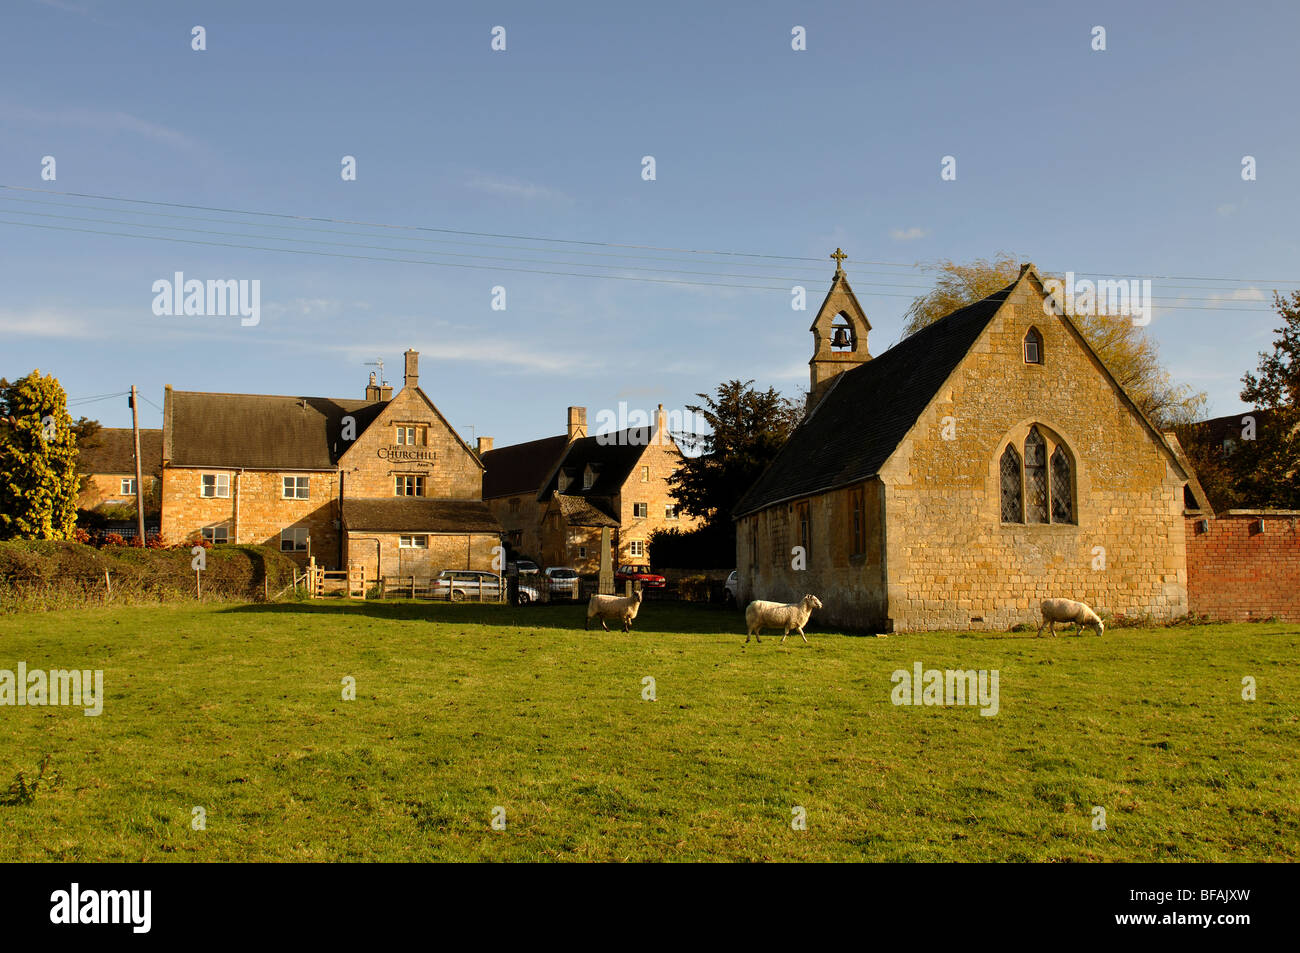 Paxford village, Gloucestershire, England, UK Stock Photo